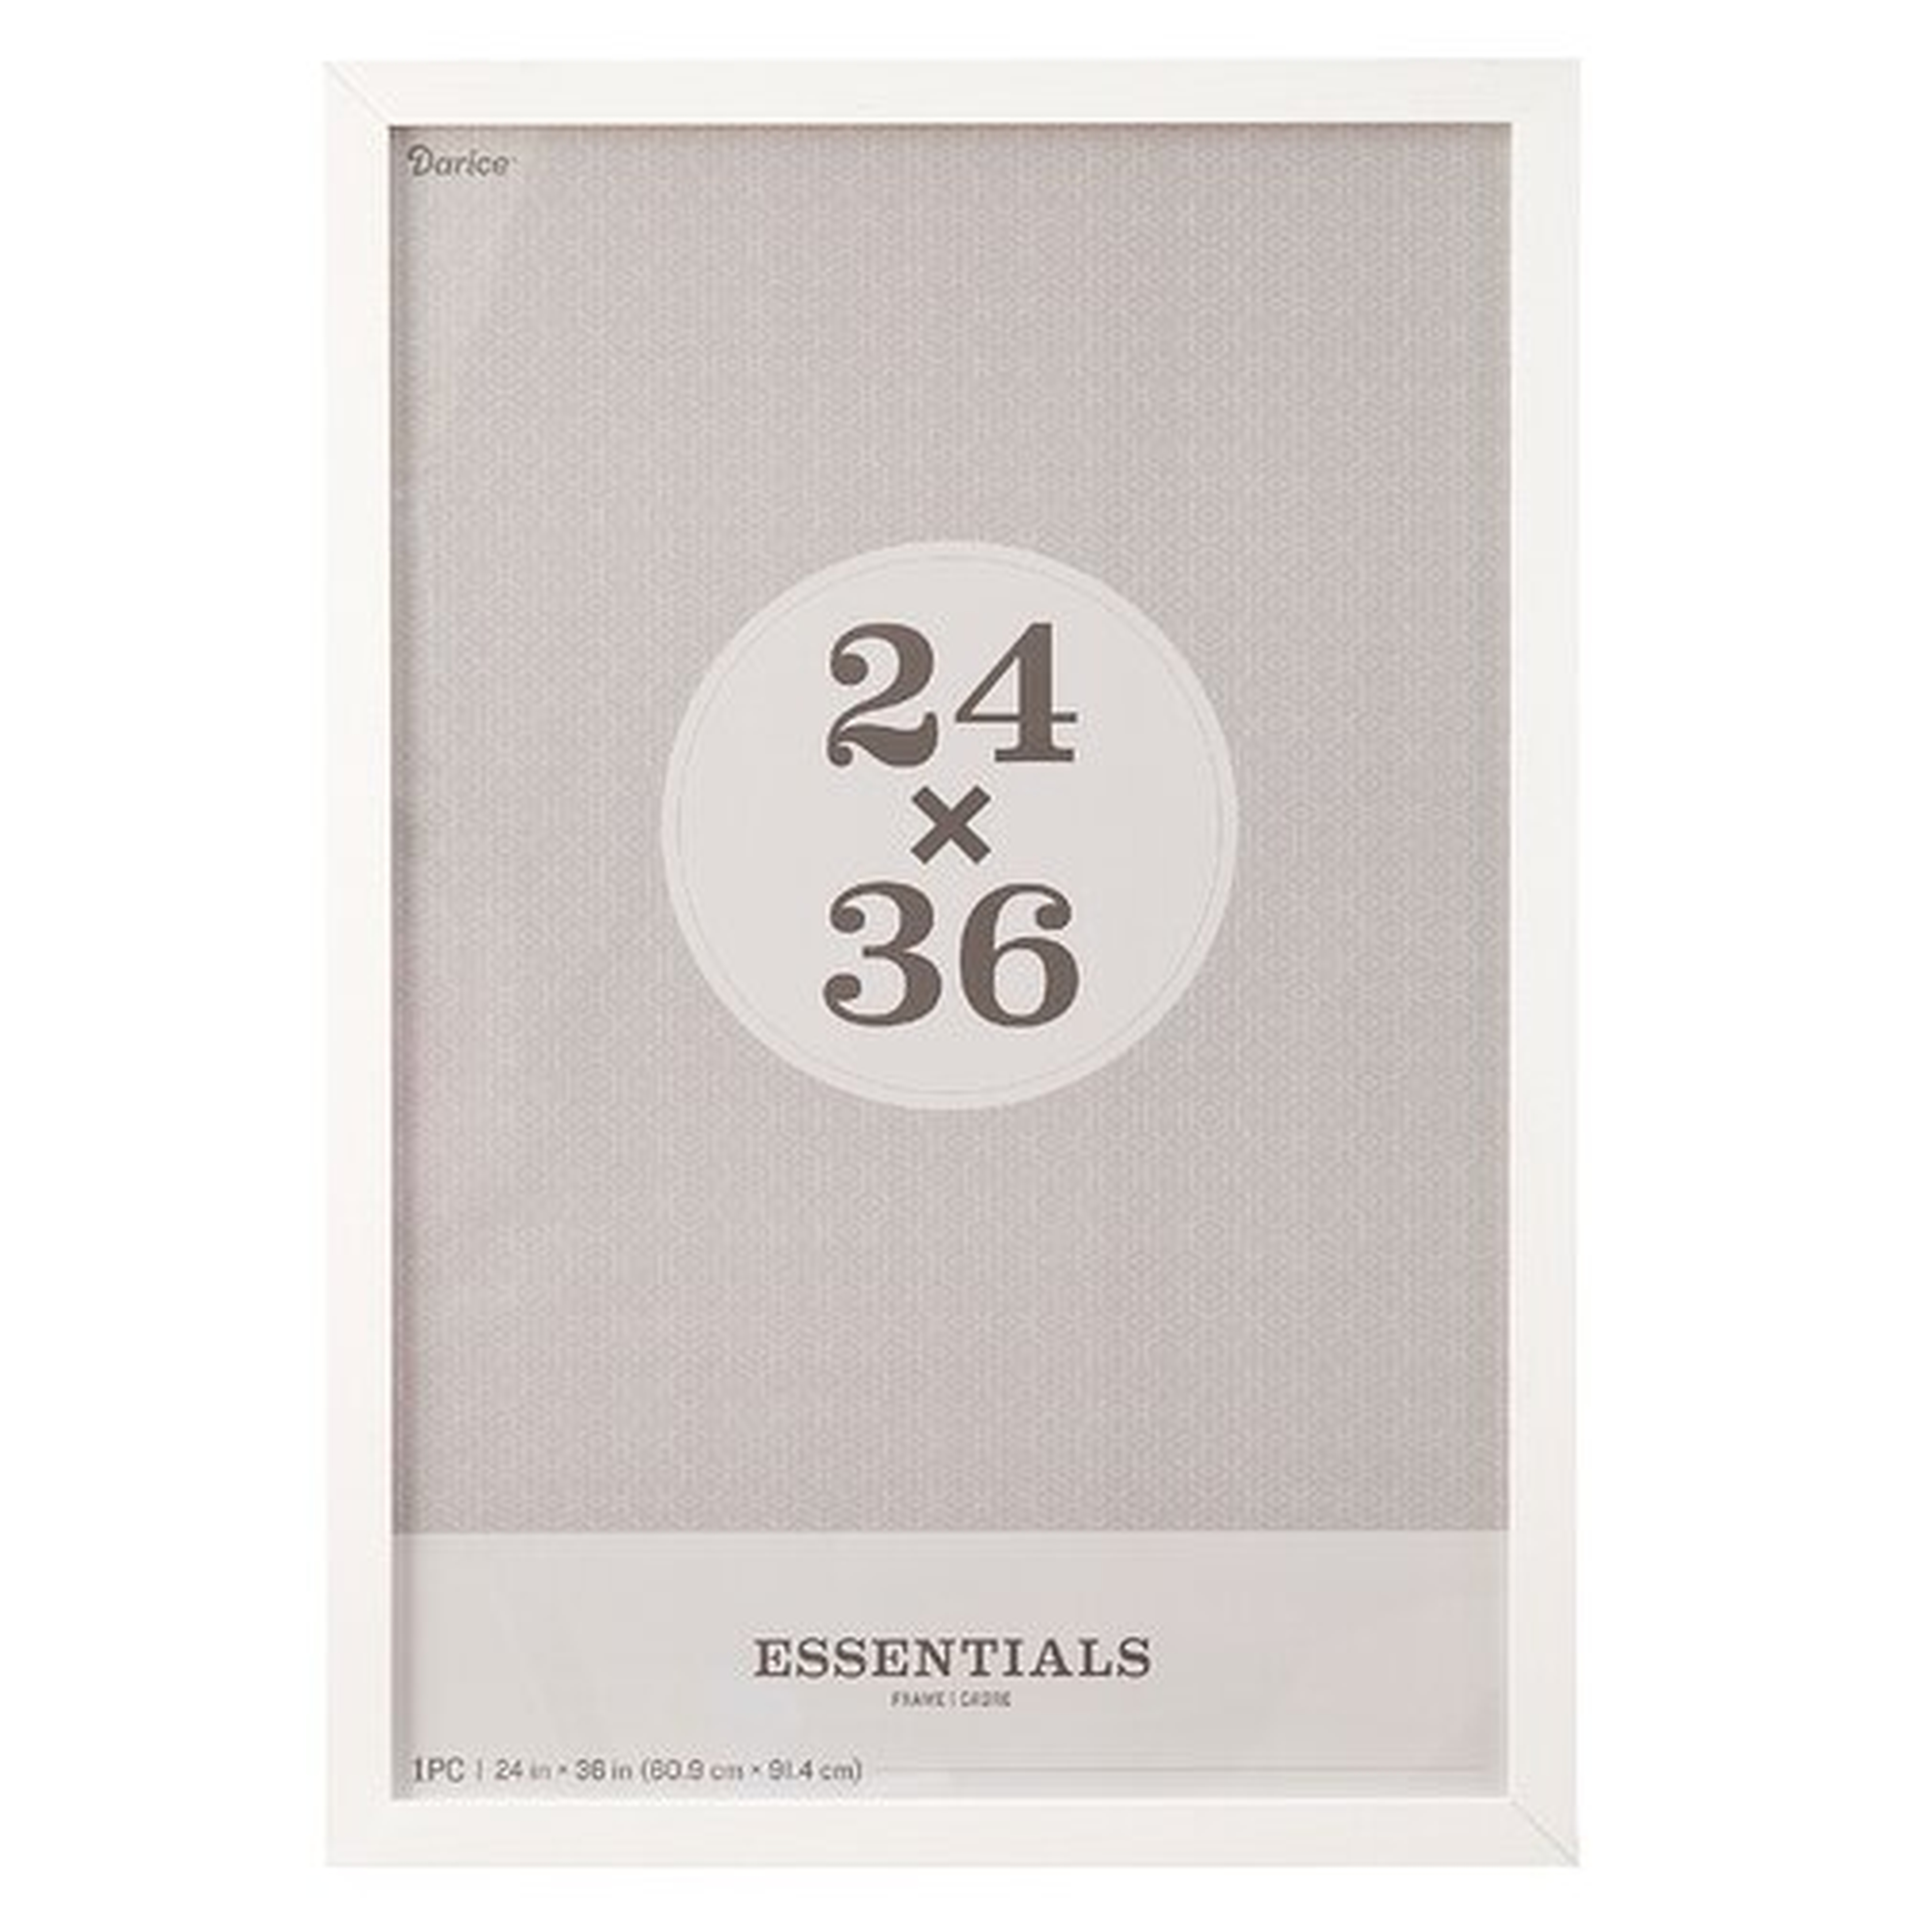 Rosetta Essentials Picture Frame - White - 24" x 36" - Wayfair